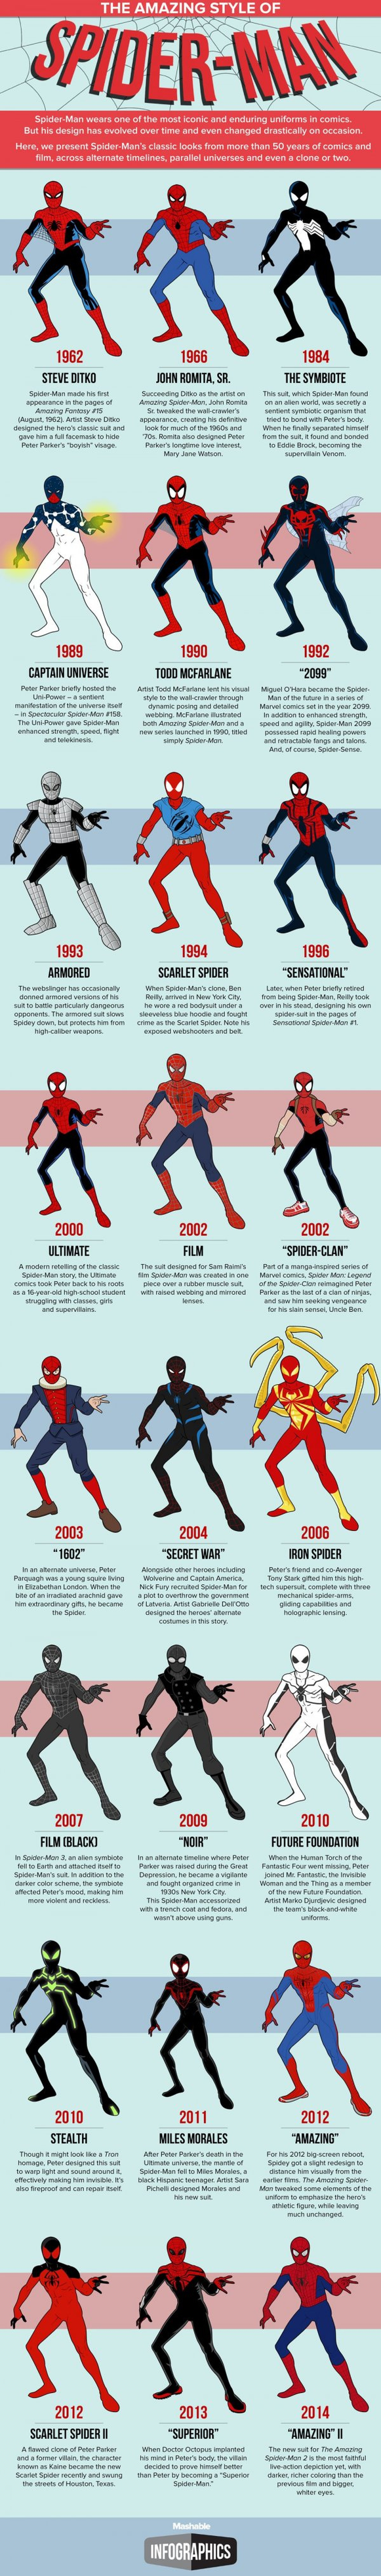 Todos los trajes de Spider-man, en una imagen